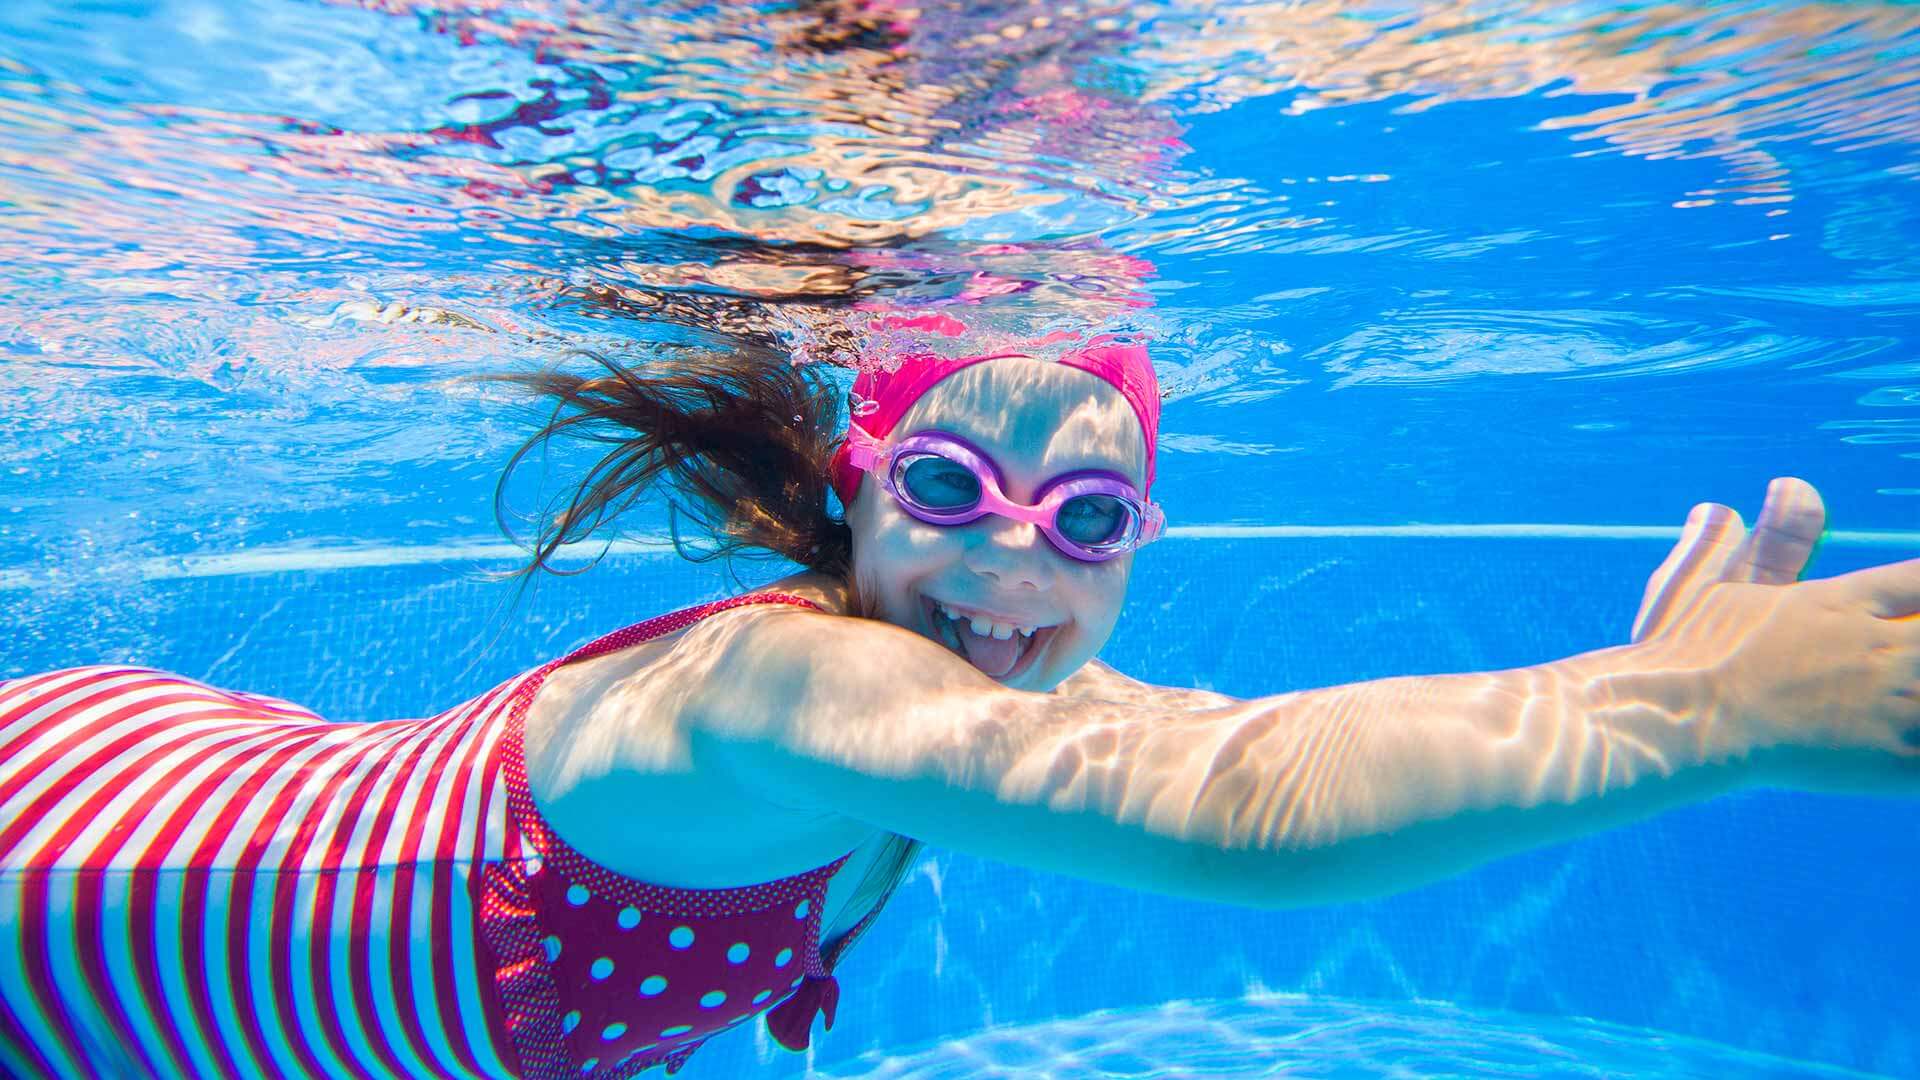 Petite fille avec lunettes de natation nageant sous l'eau tout sourire